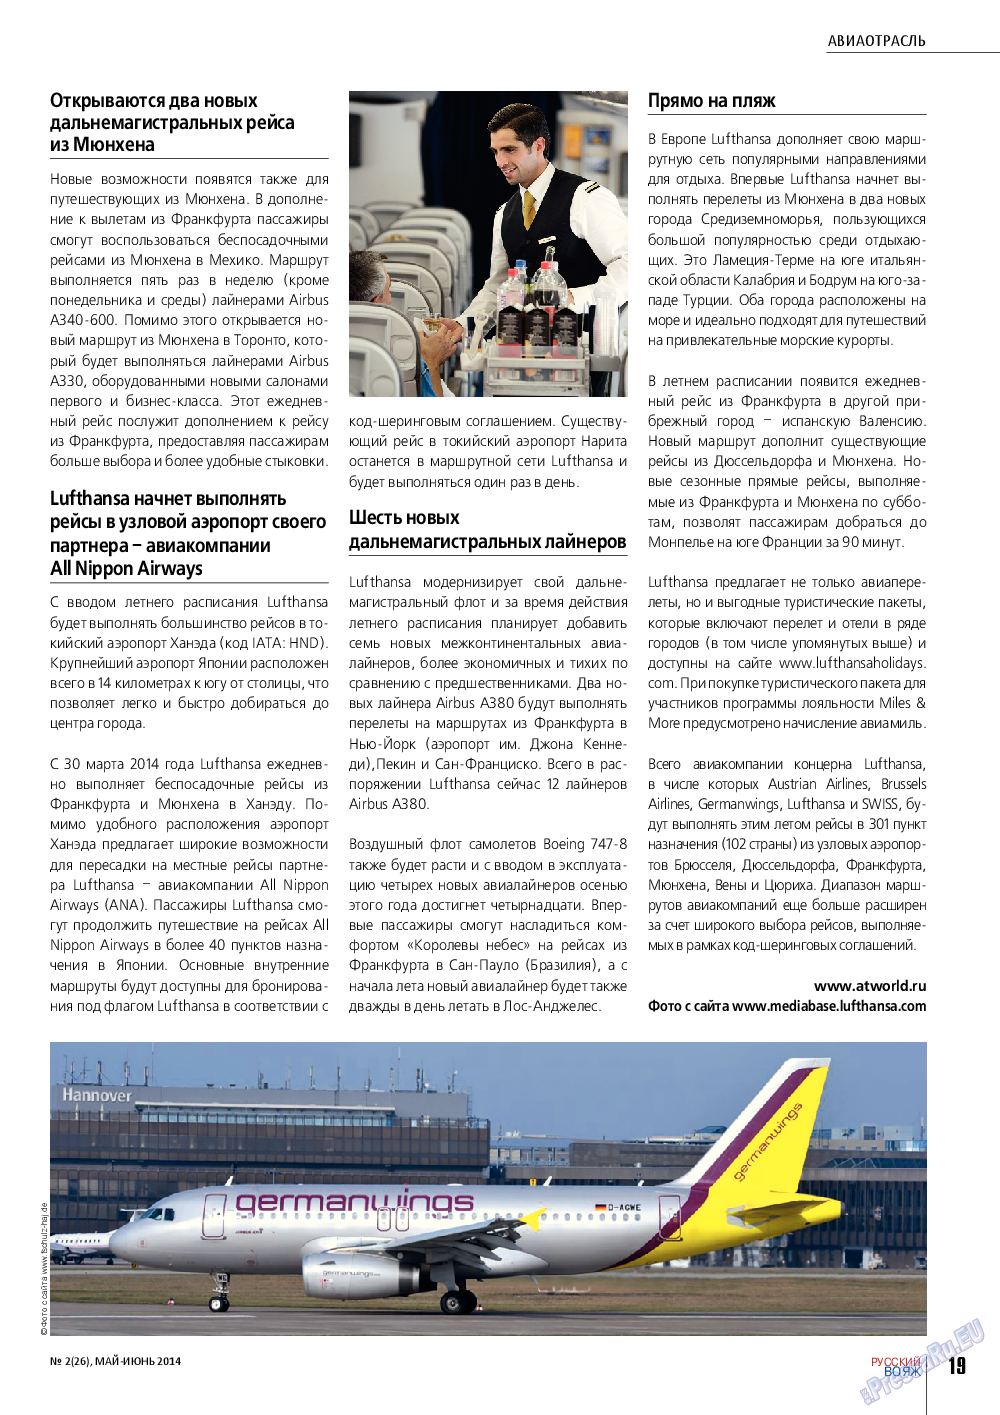 Русский вояж (журнал). 2014 год, номер 2, стр. 19